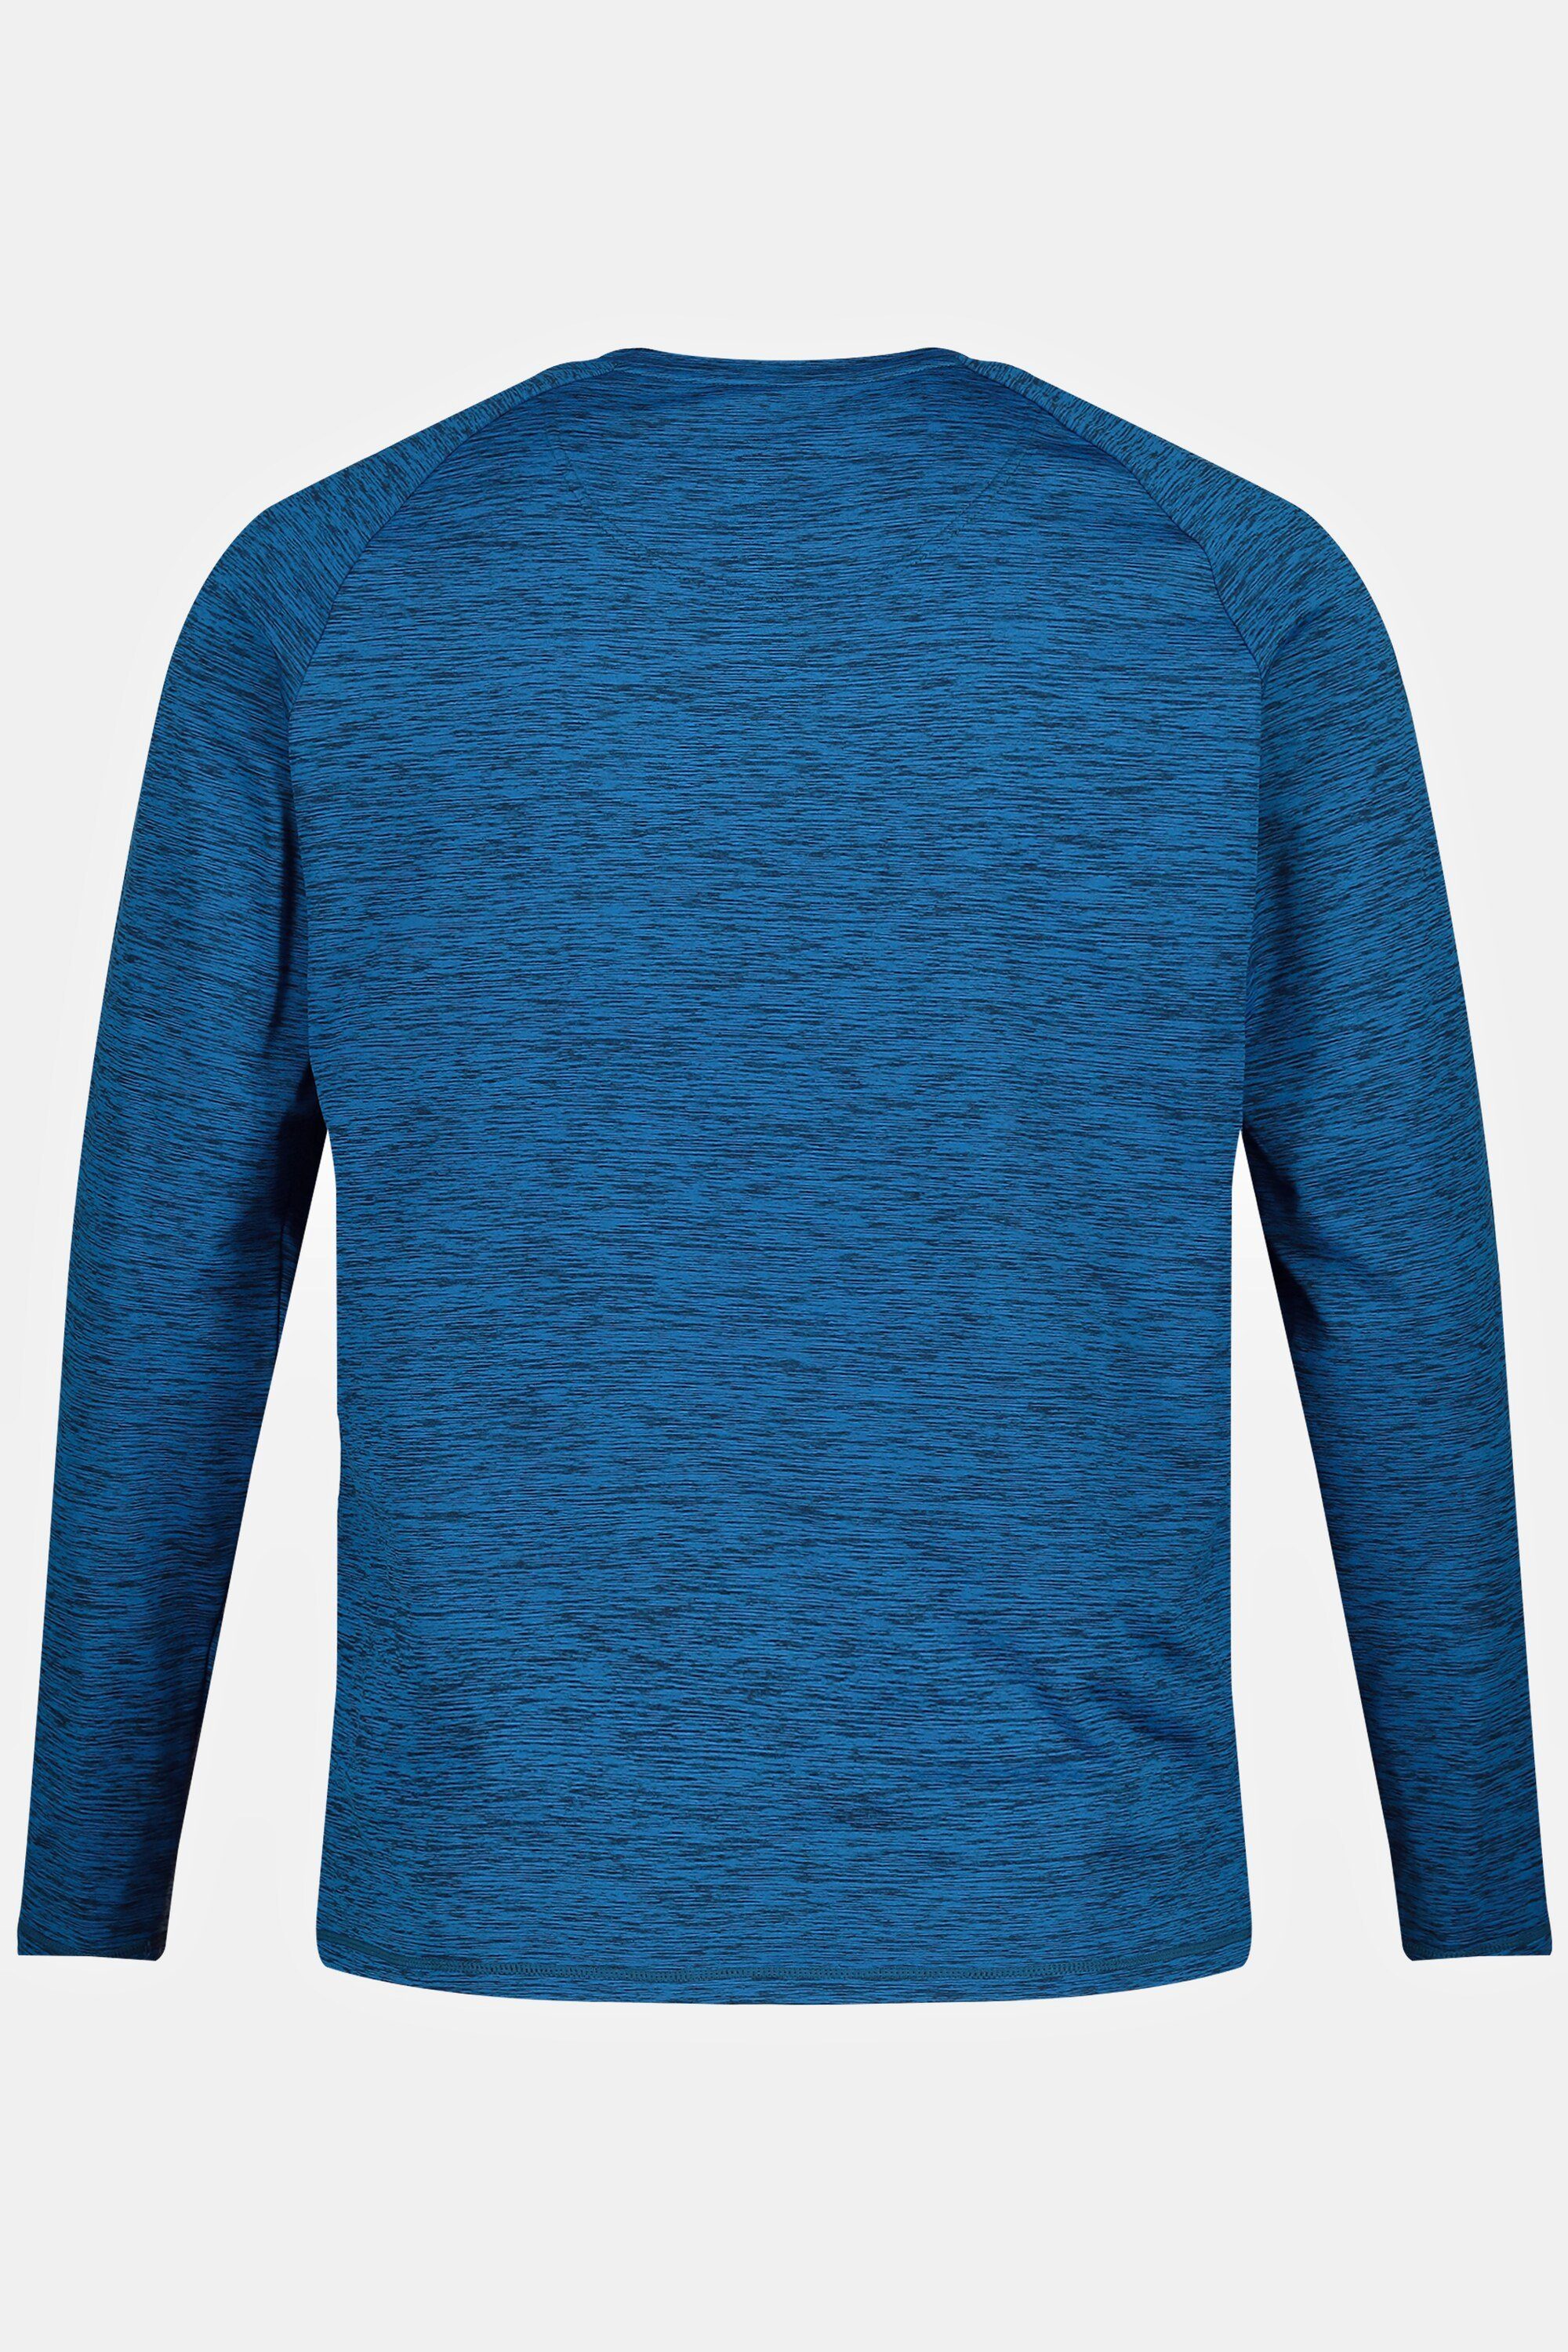 Unterhemd JP1880 FLEXNAMIC® Skewear Skiunterhemd